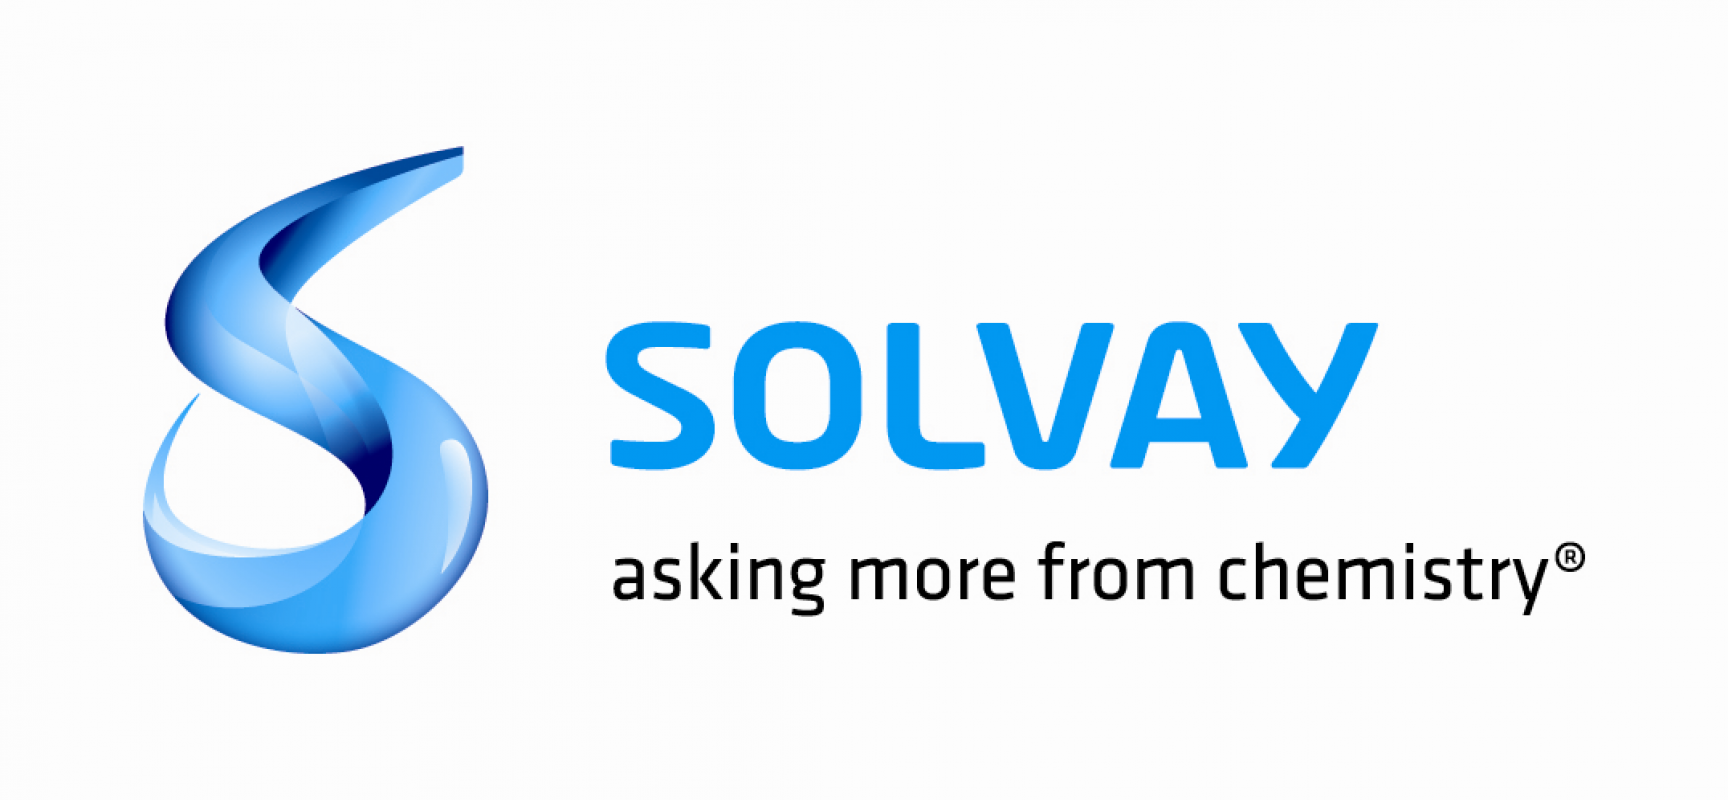 Solvay firma un acuerdo mundial de Responsabilidad social y medioambiental con IndustriALL